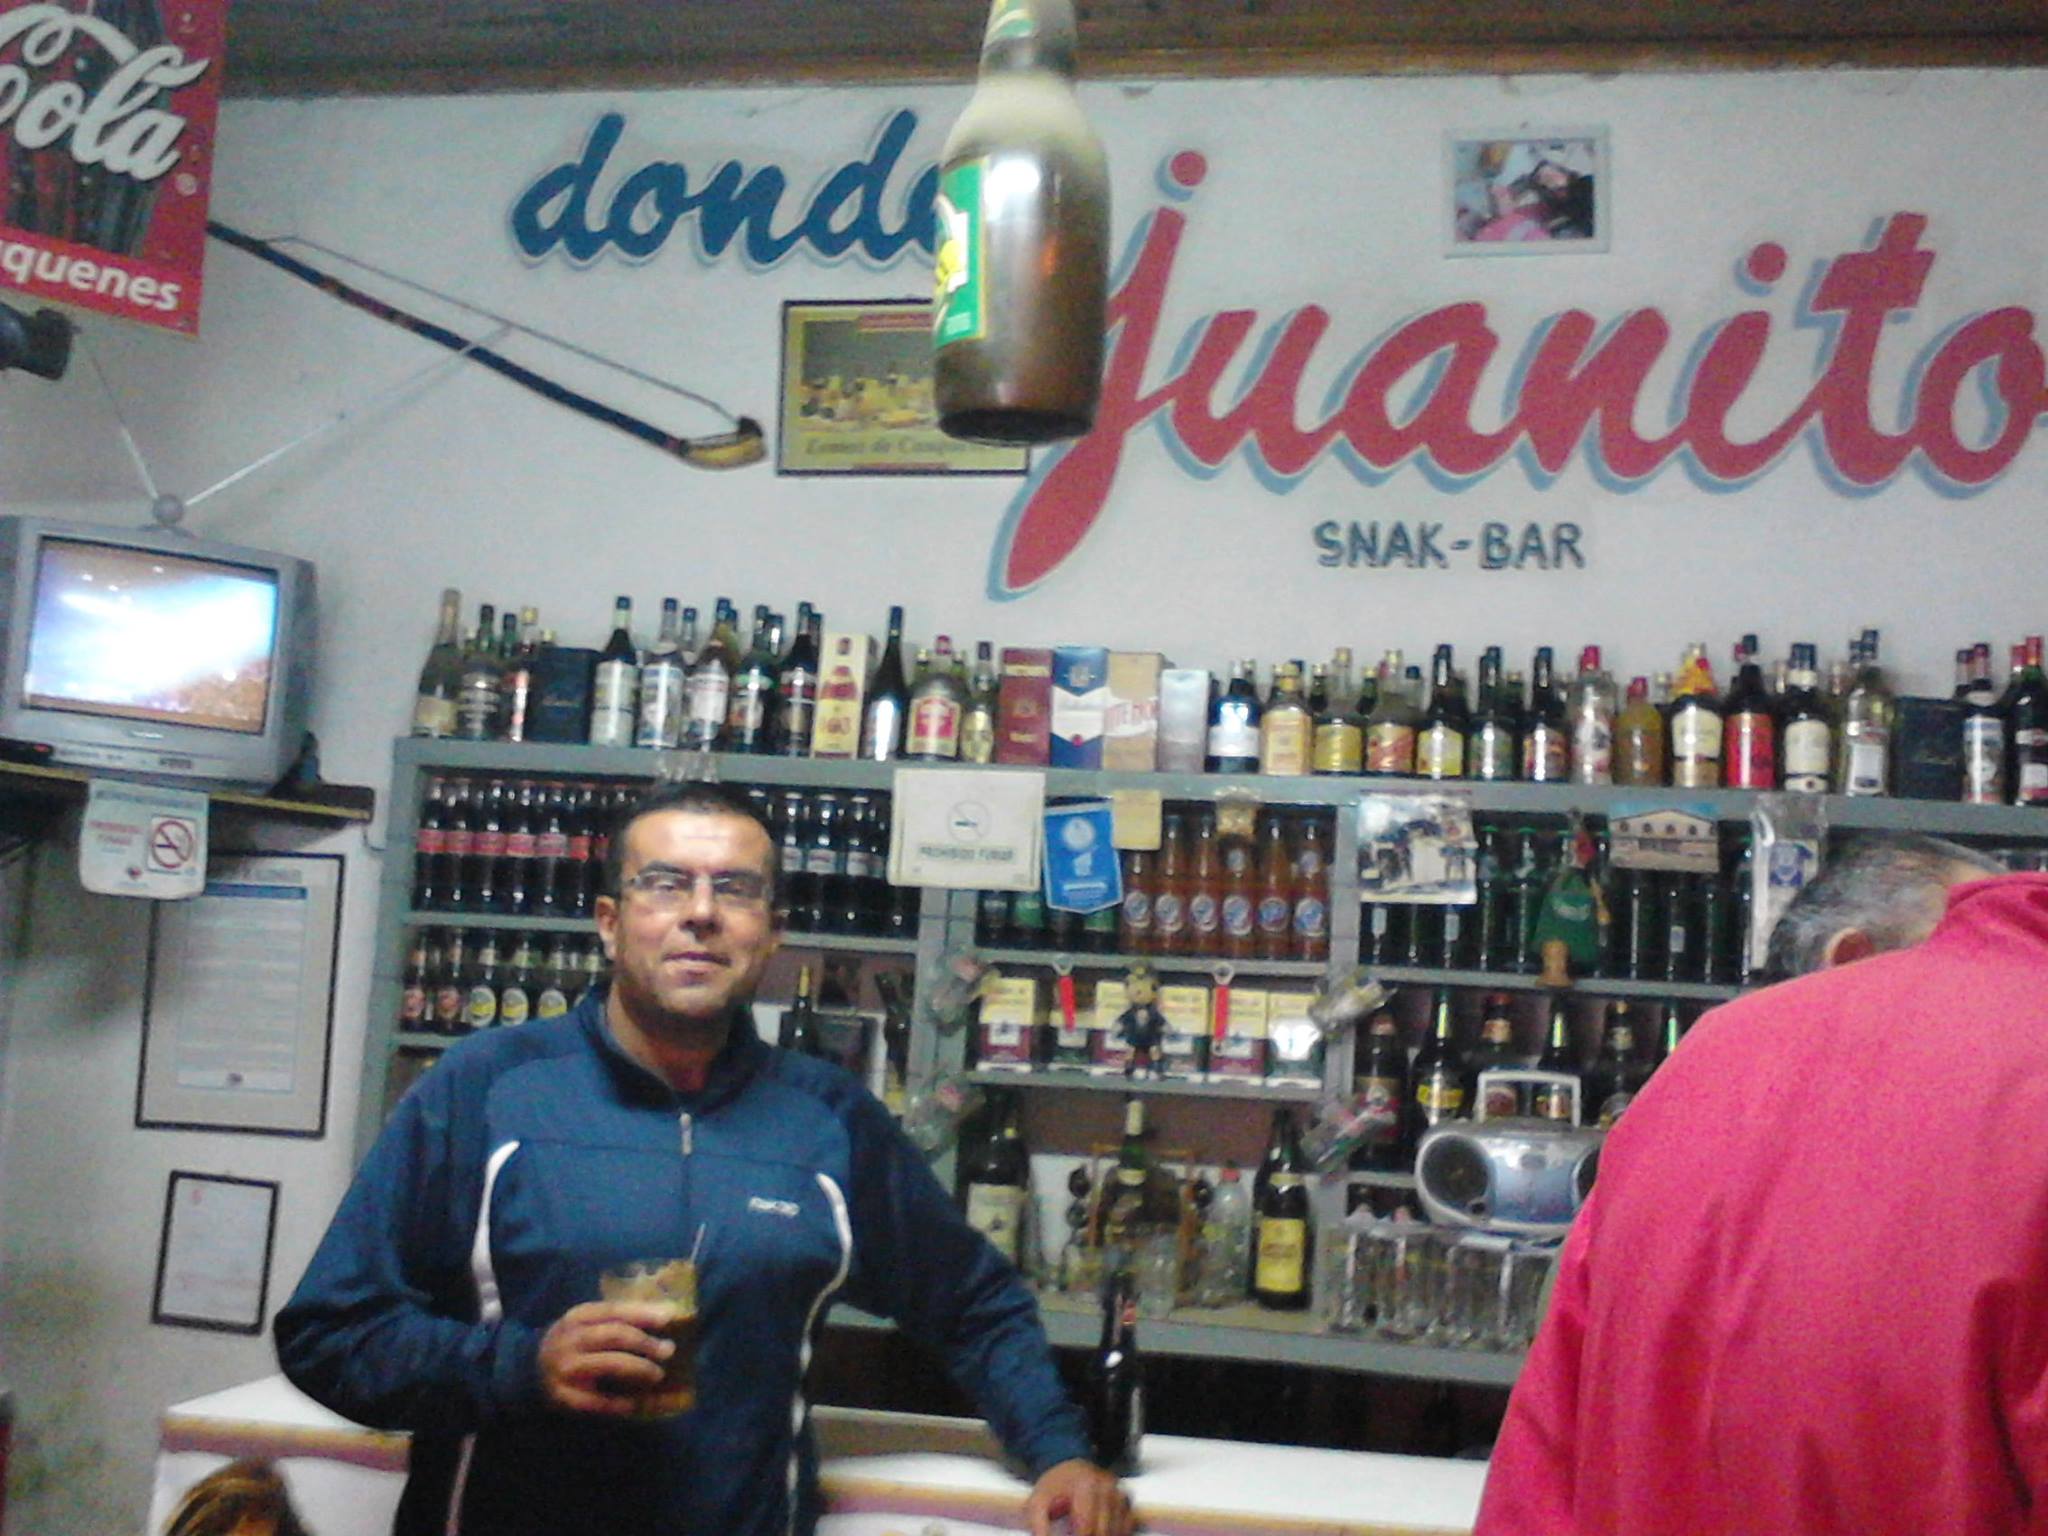 Donde Juanito Snak-Bar